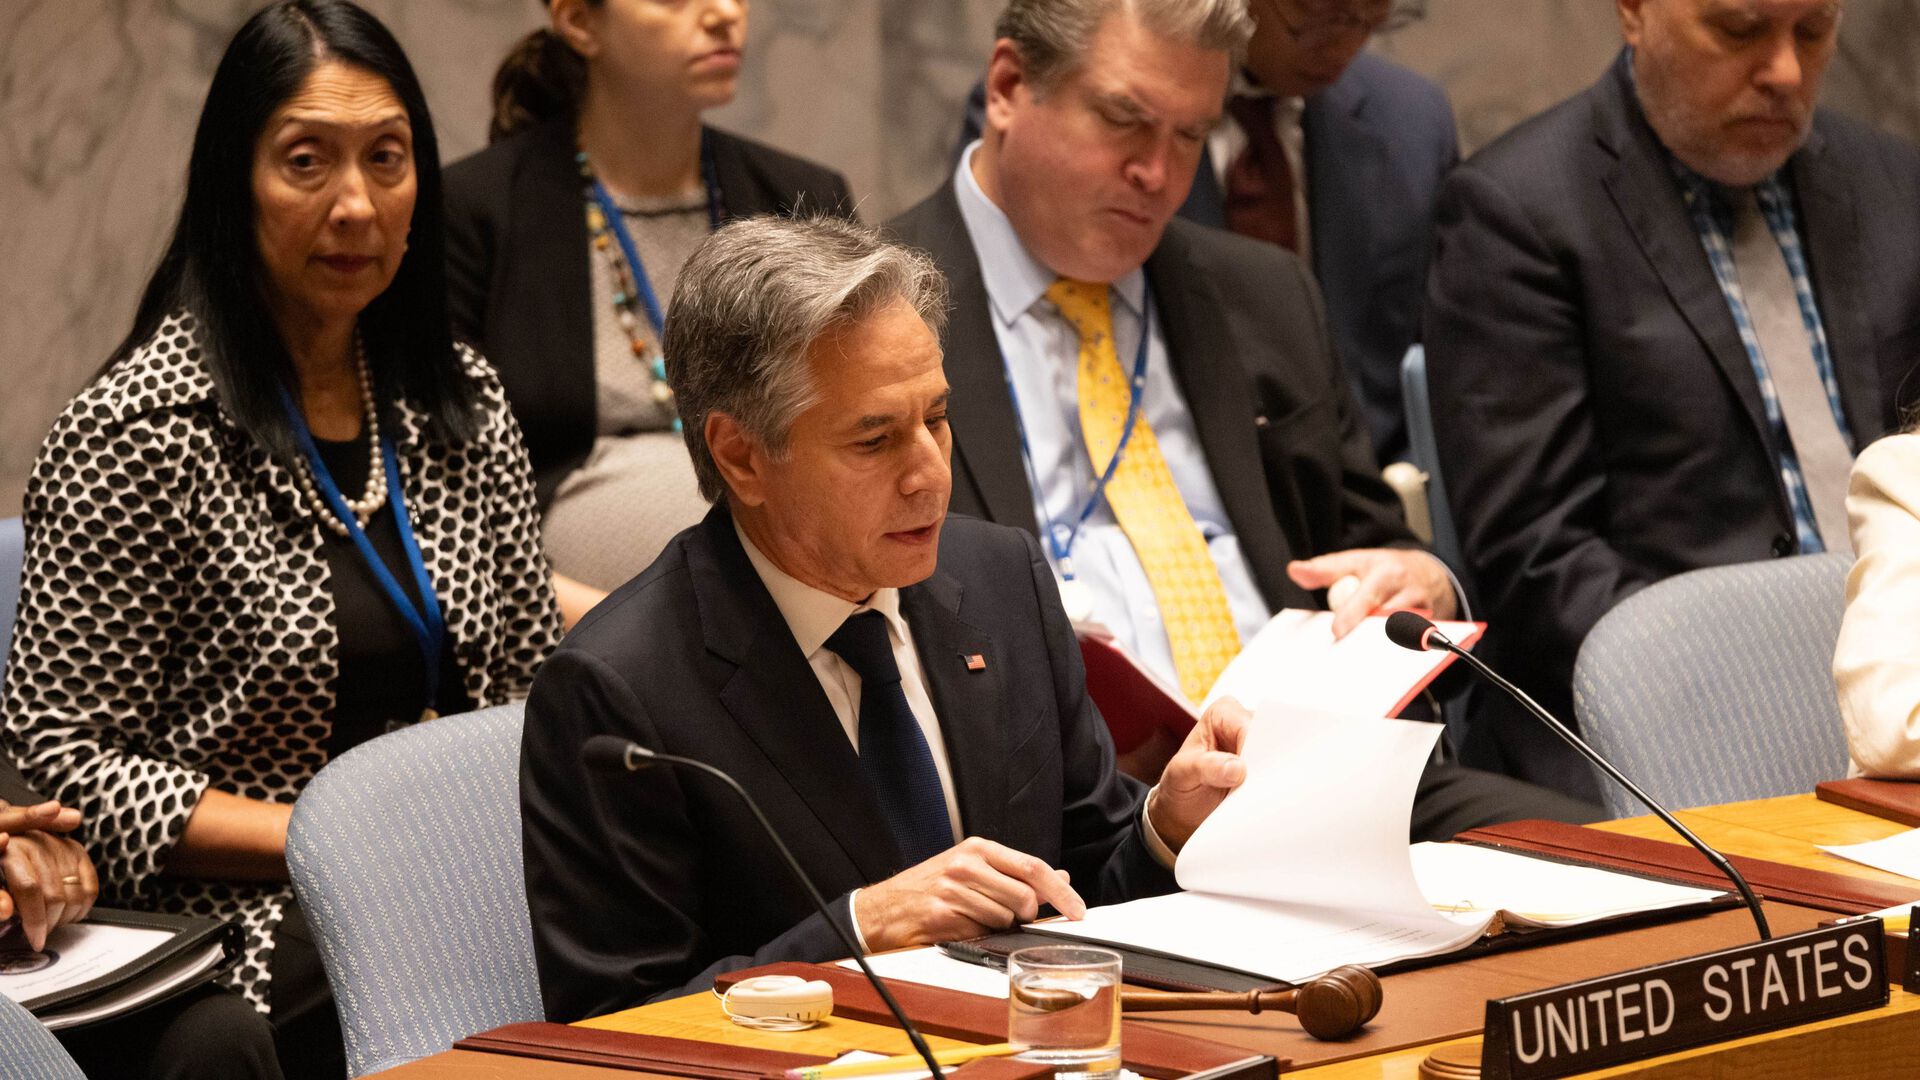 USAs utenriksminister Antony Blinken sitter omringet av andre folk snakker i FNs sikkerhetsråd. Skilt hvor det står United States står  på pulten foran ham.